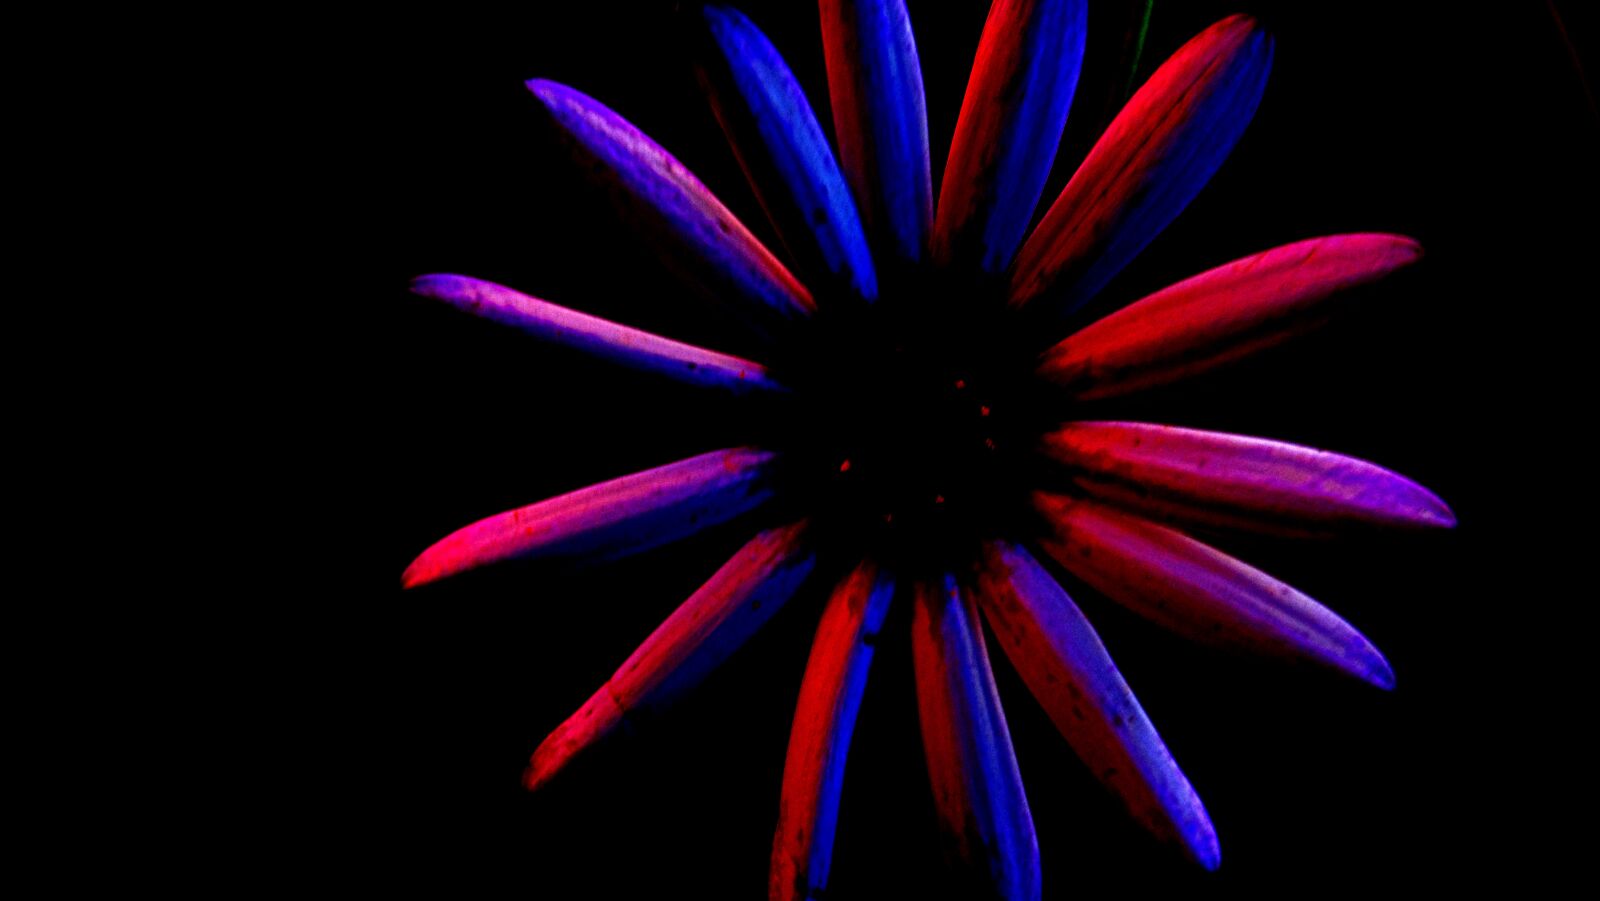 Sony Cyber-shot DSC-H200 sample photo. Colores, flor, fotografia photography